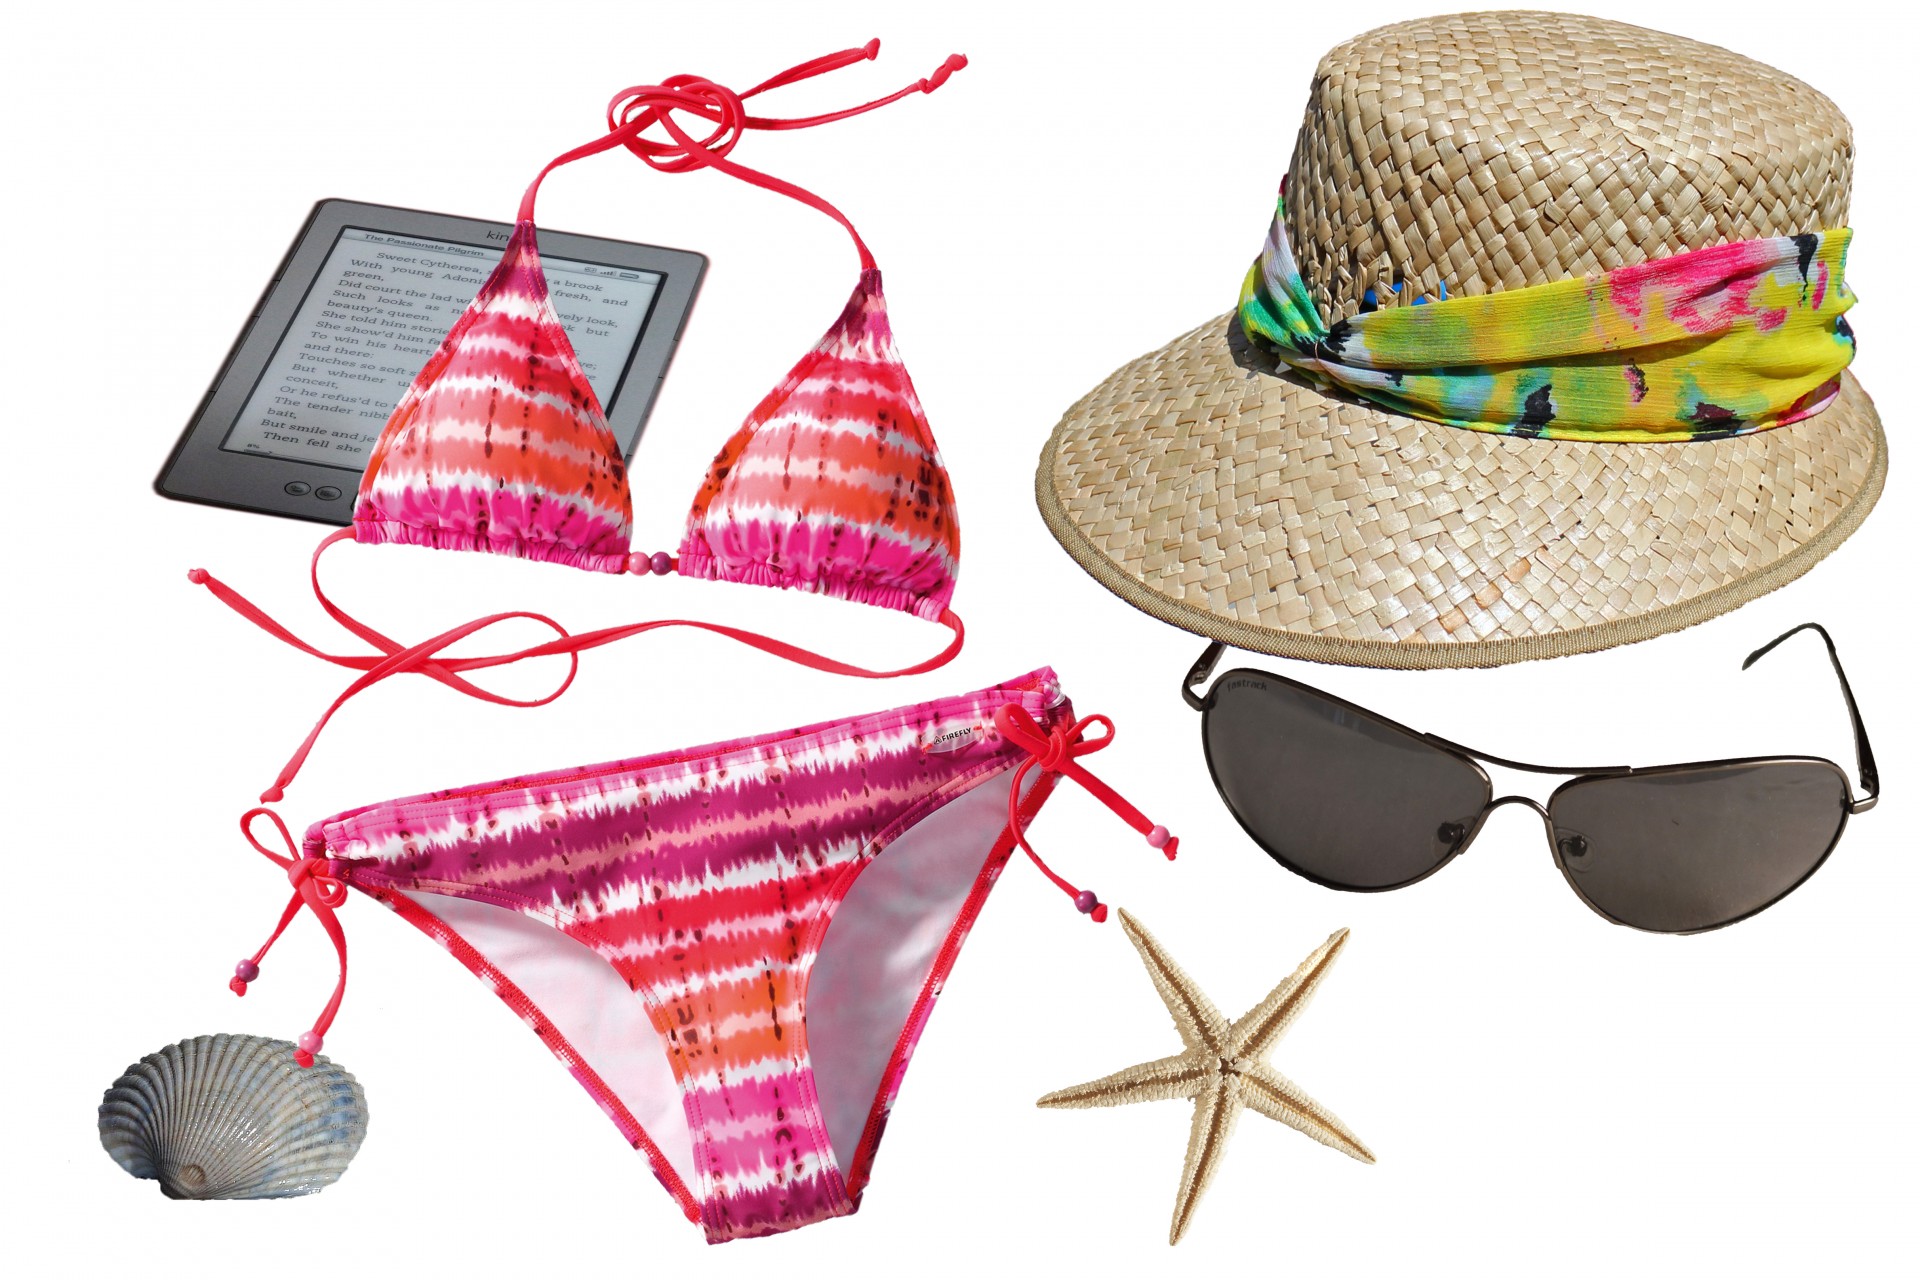 Badetøj, solhat, solbriller, sommer tilbehør og accessories